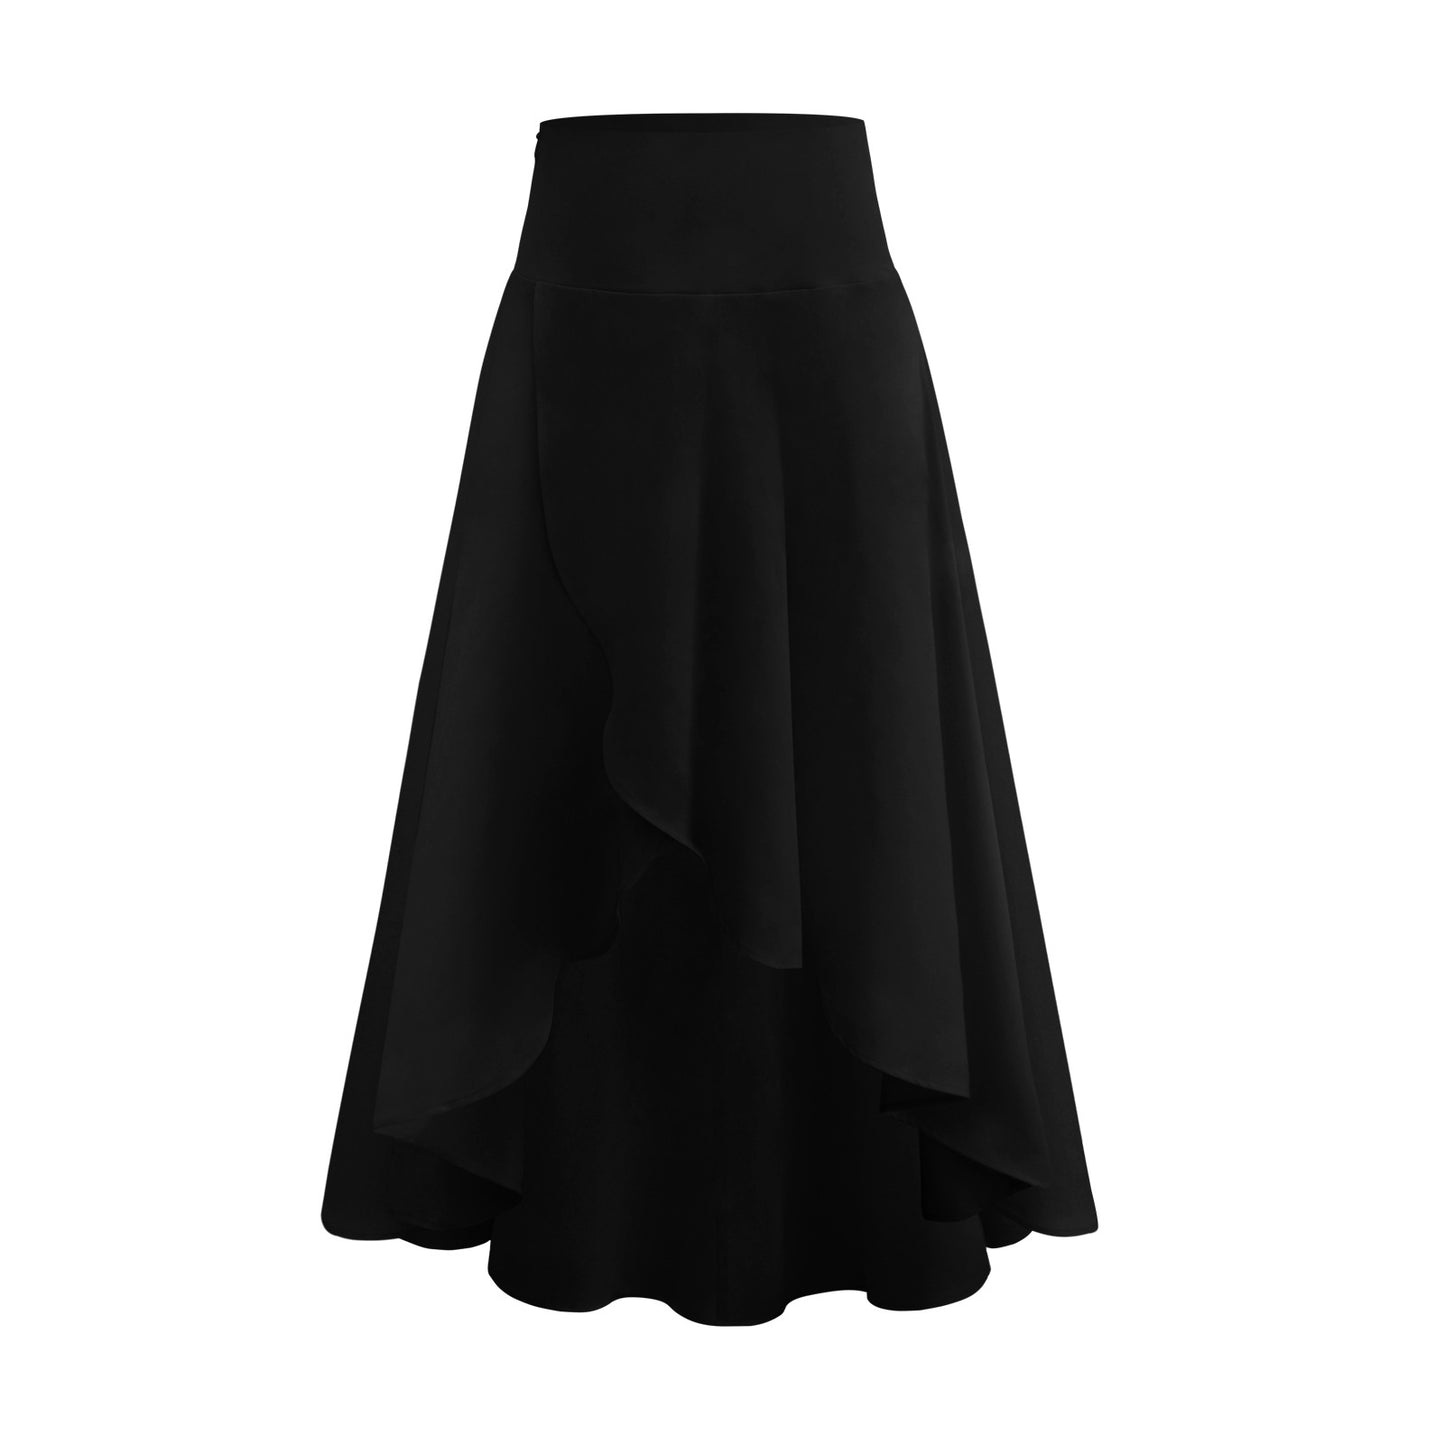 Ruffled Irregular Skirt